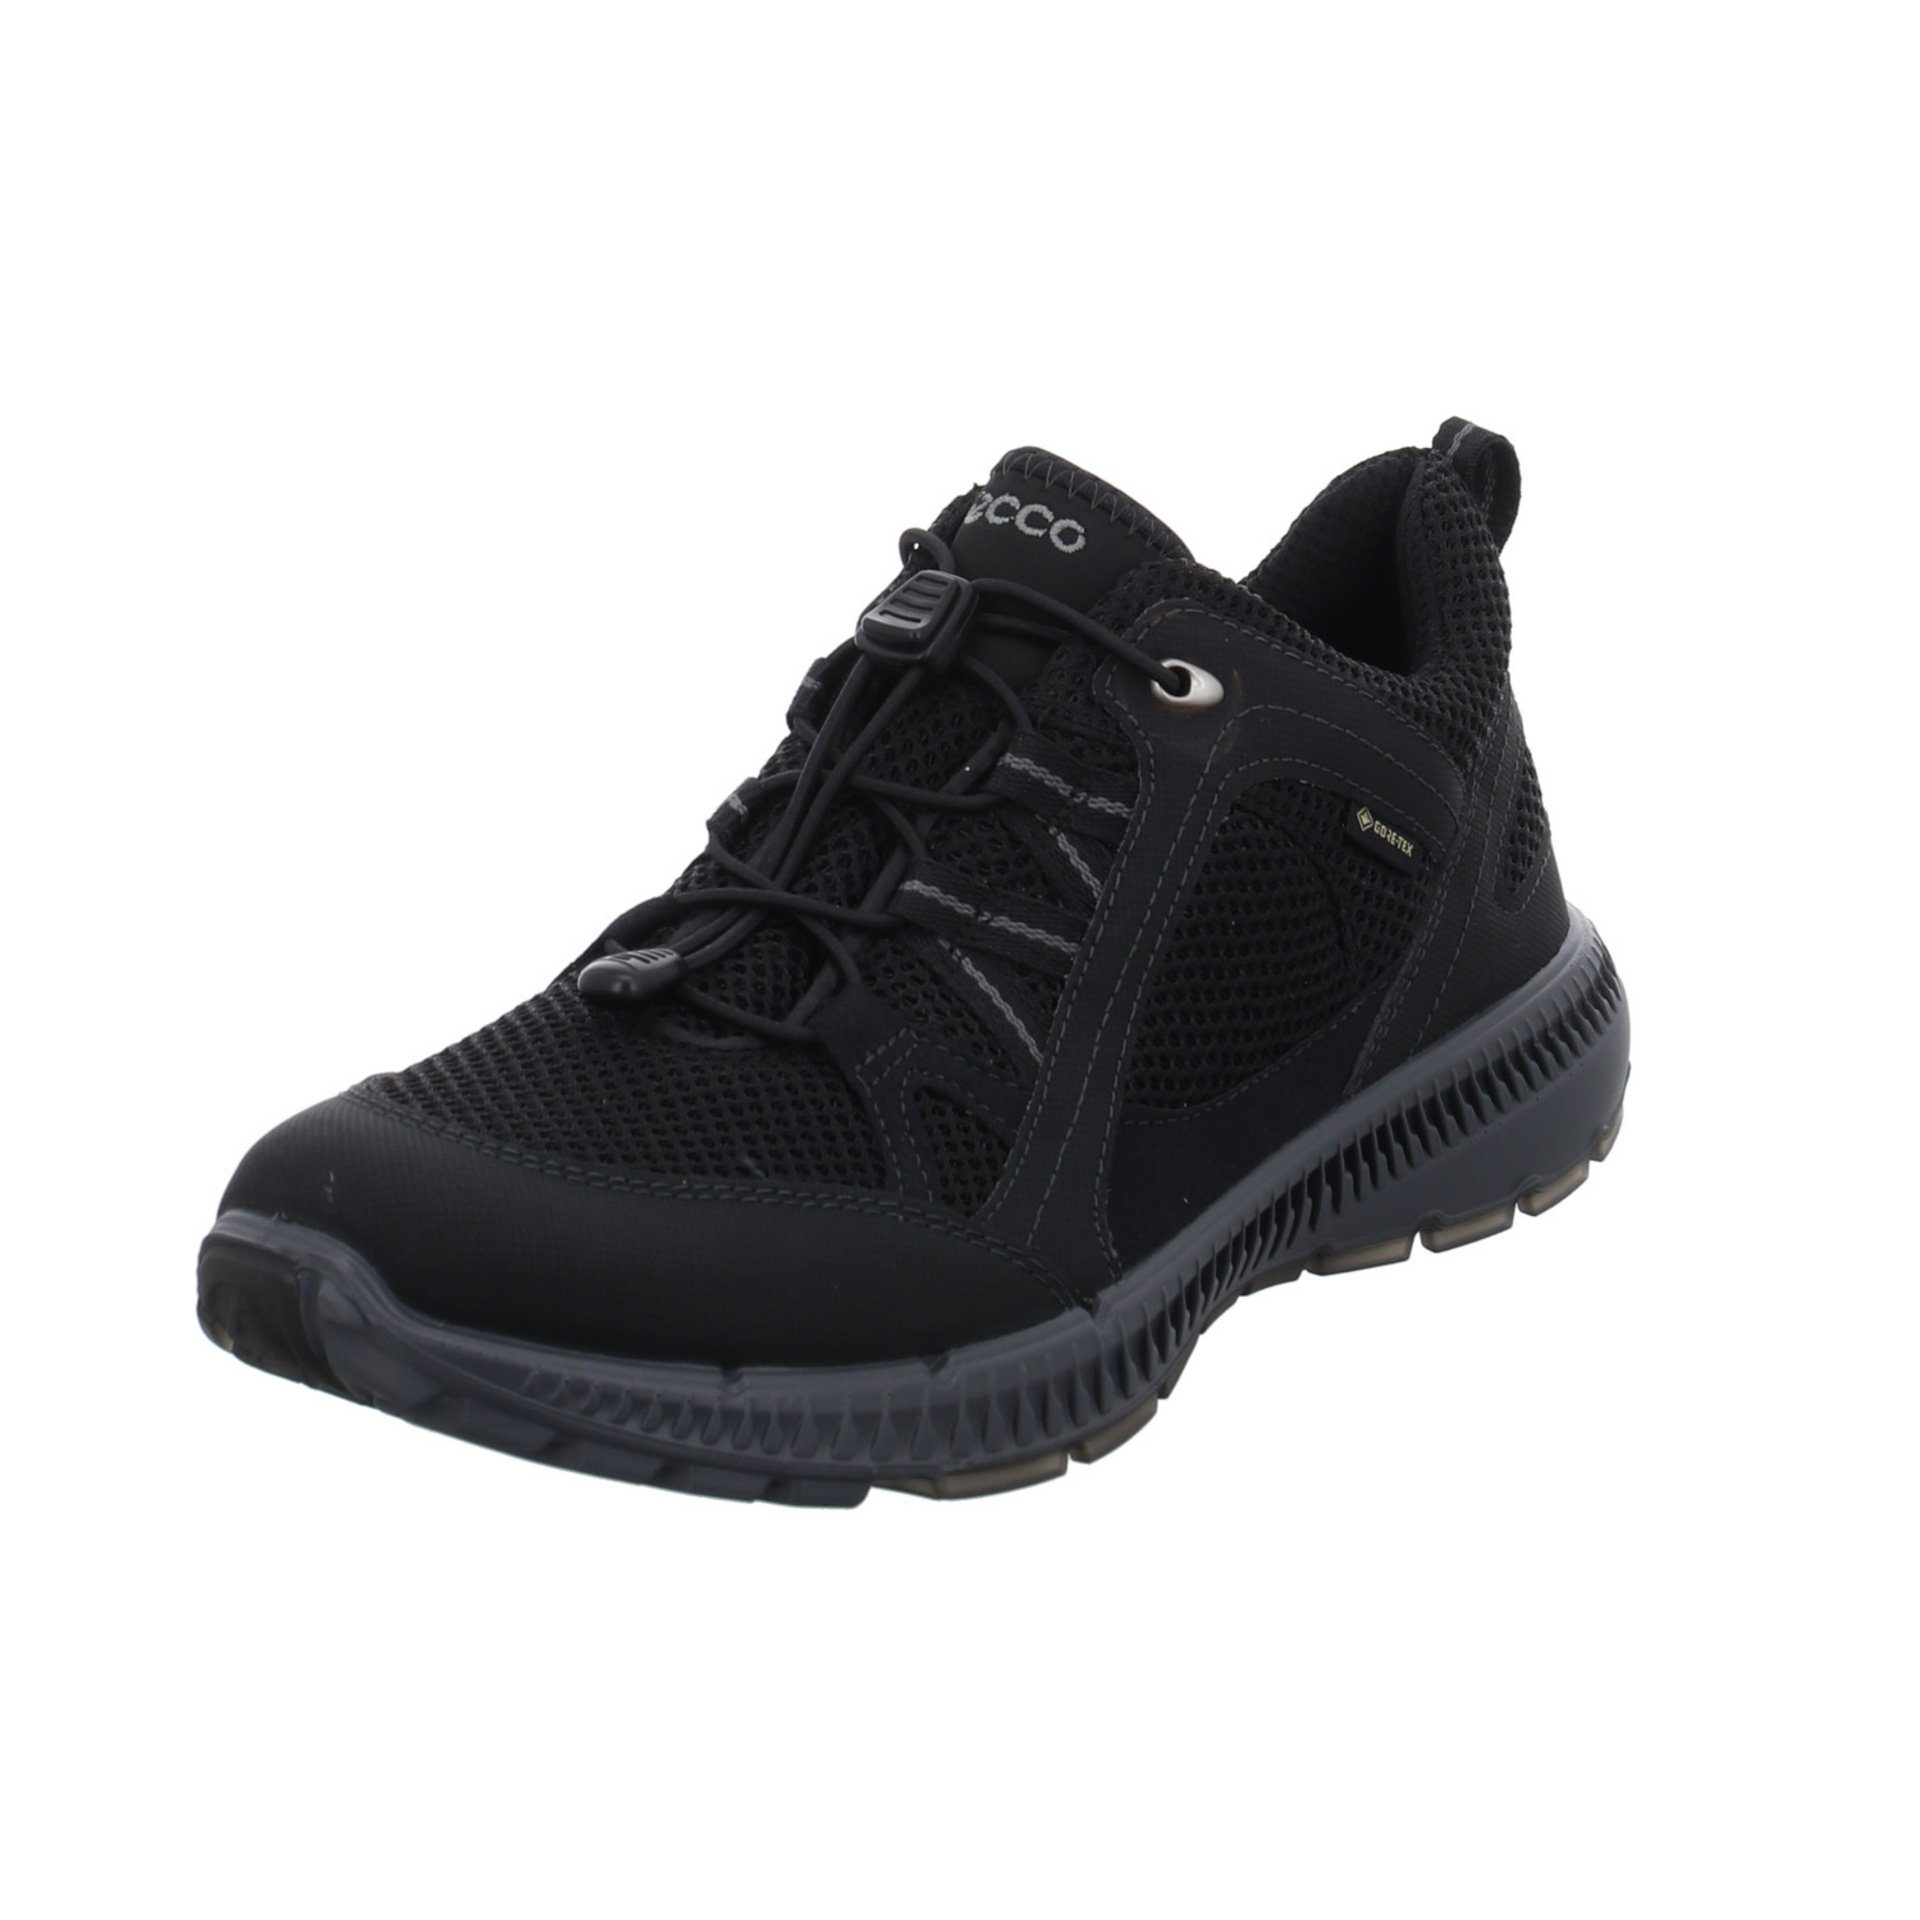 Ecco Damen Schuhe Outdoor Terracruise GTX Outdoorschuh Outdoorschuh Synthetikkombination black